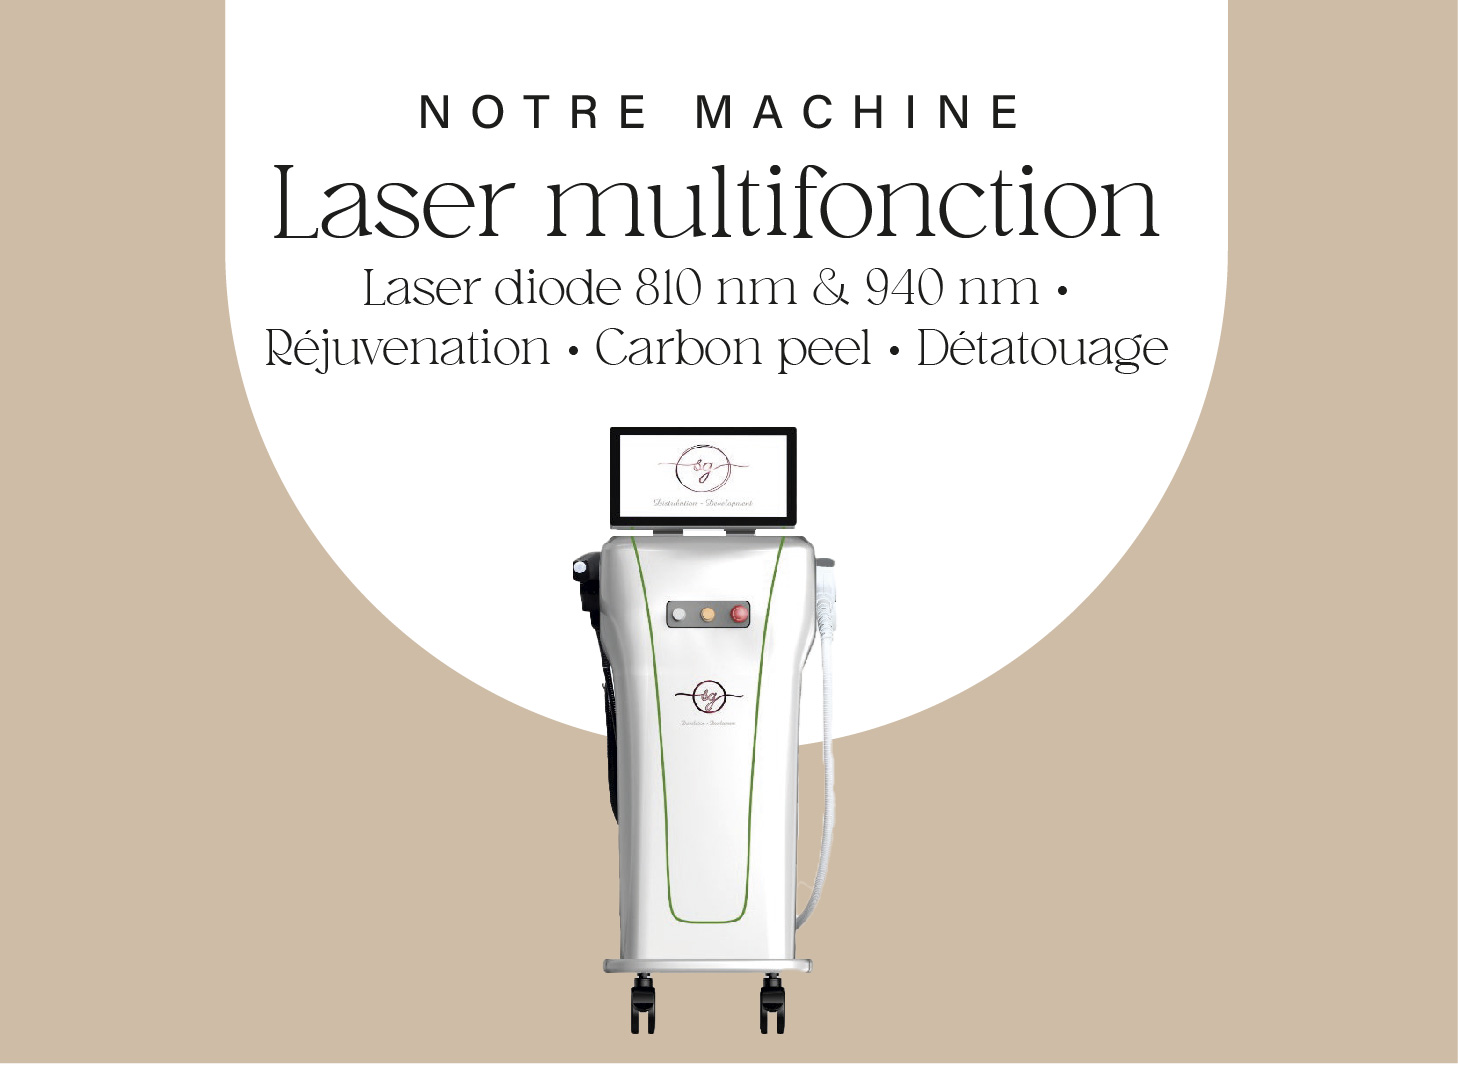 Machines laser multifonction épilation définitive, réjuvénation, carbon peel, détatouage